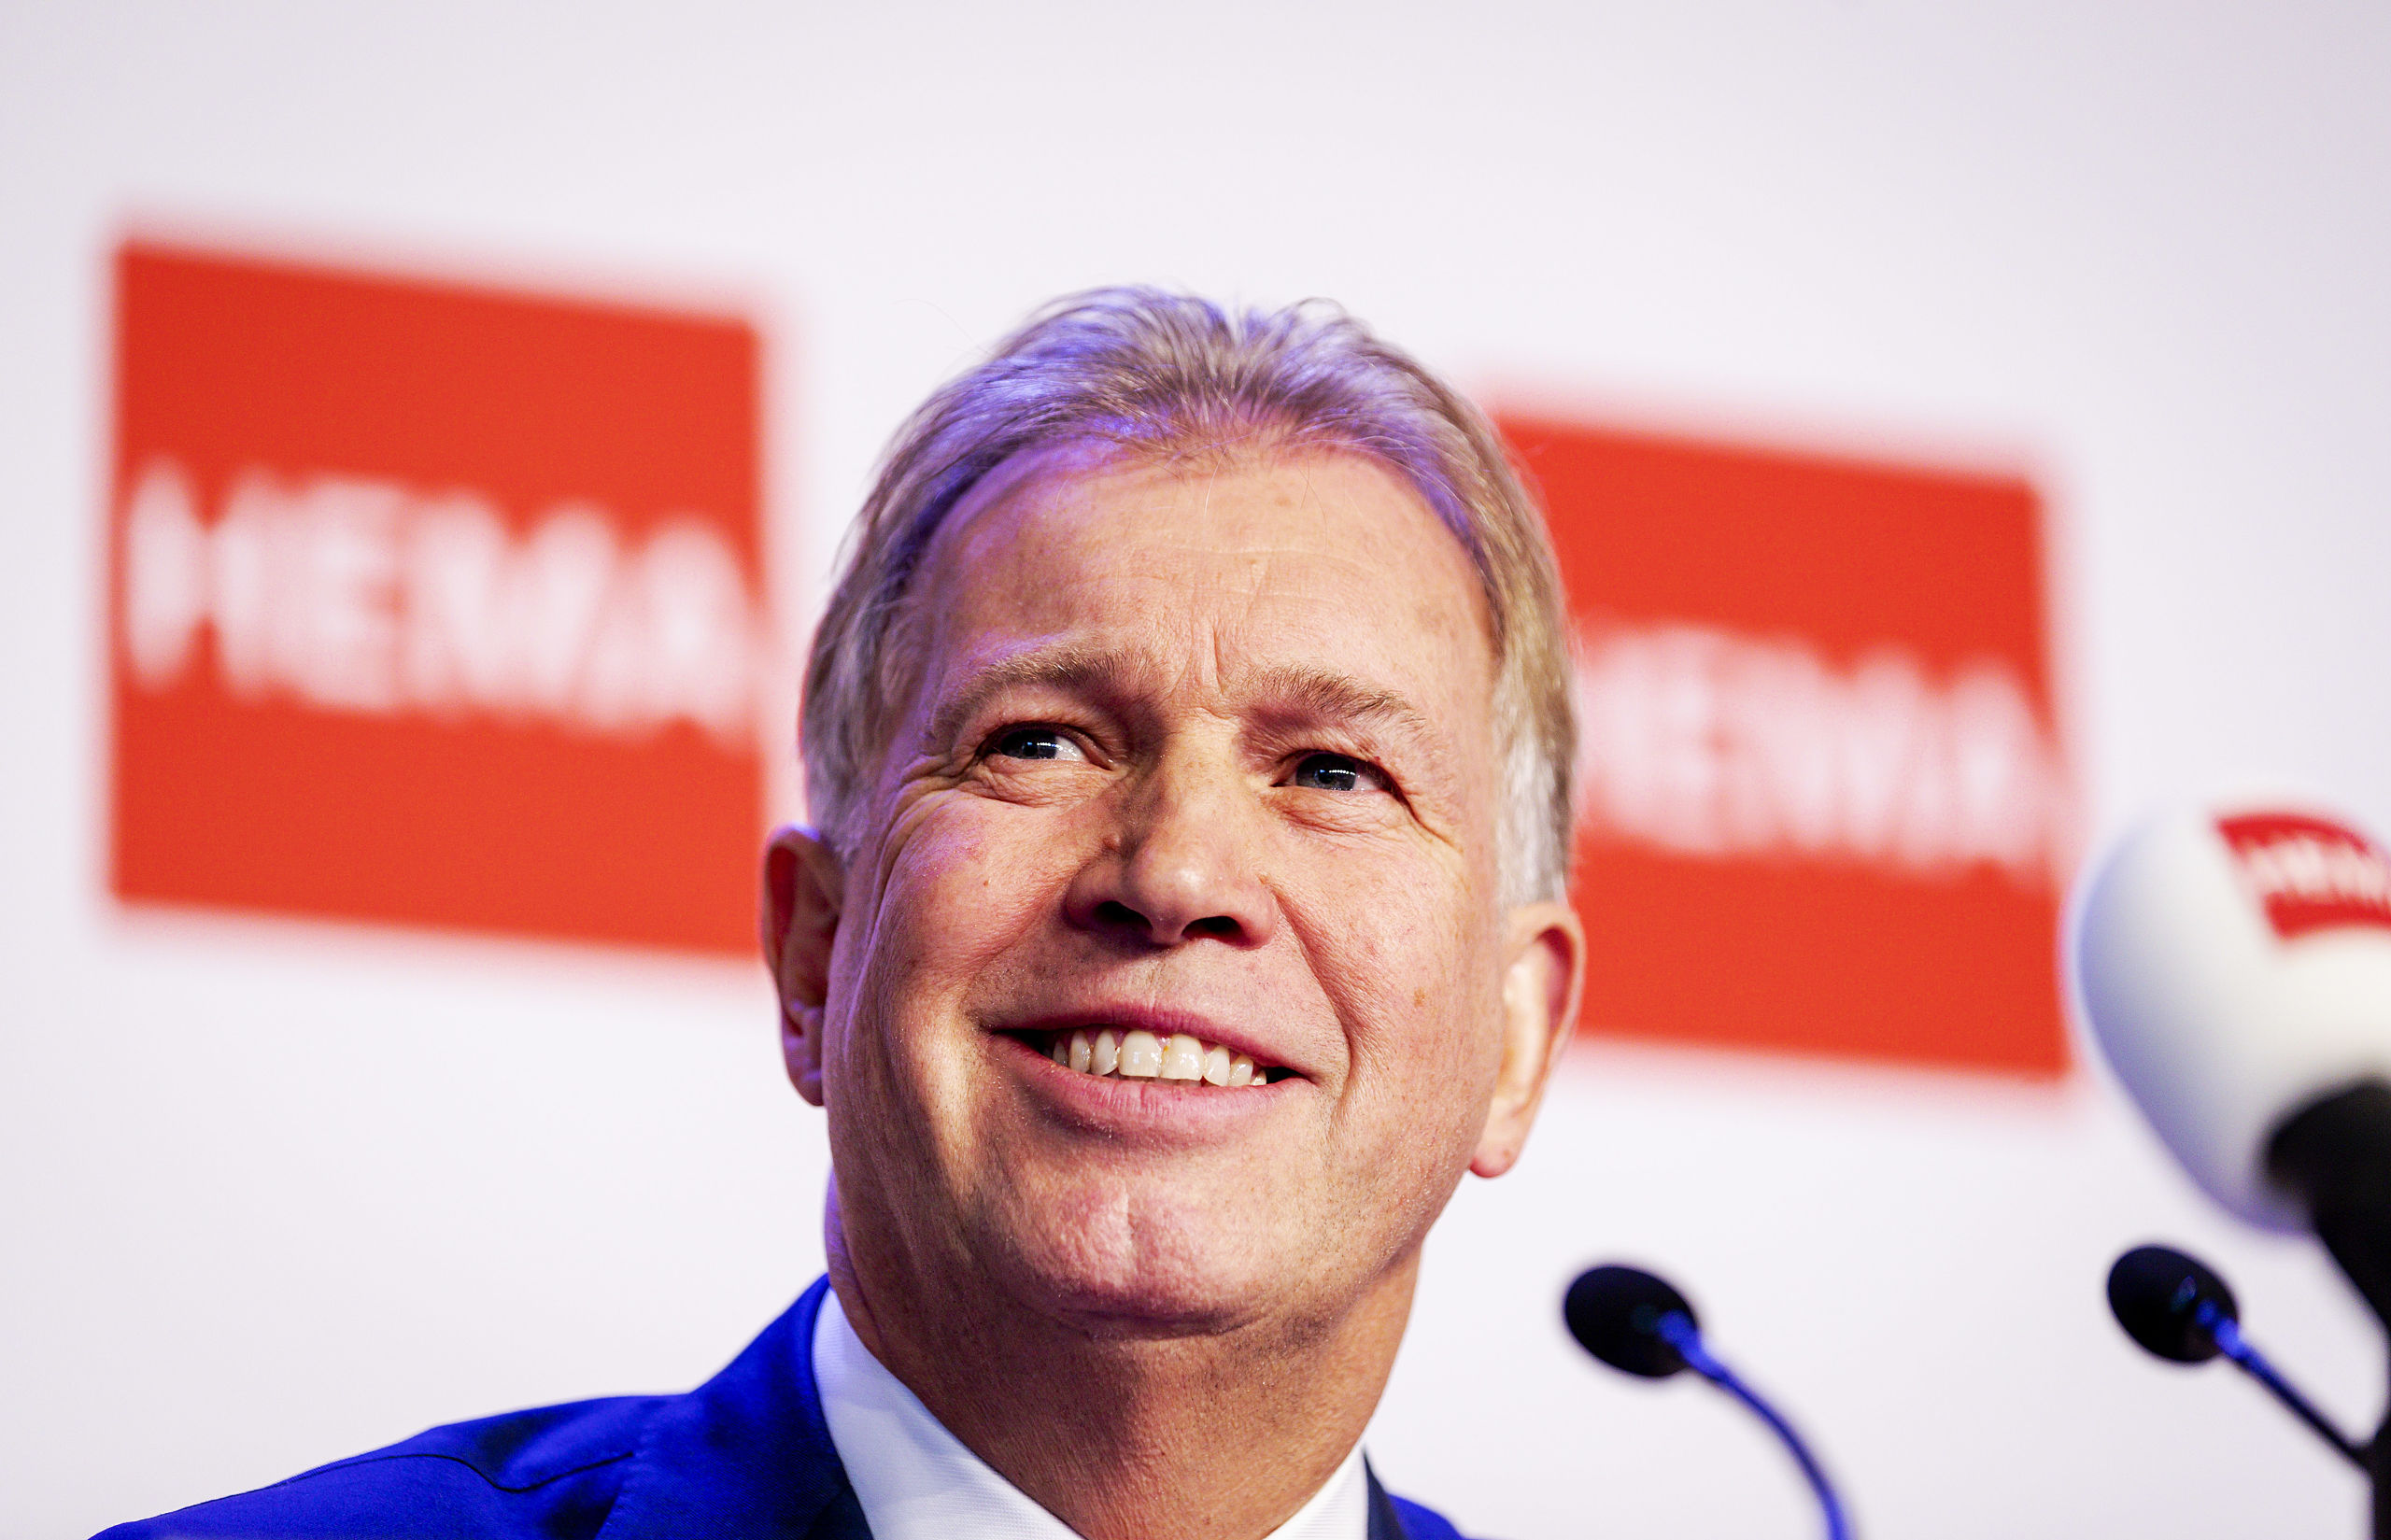 Ondernemer Marcel Boekhoorn tijdens de persconferentie over de overname van HEMA, in 2018.